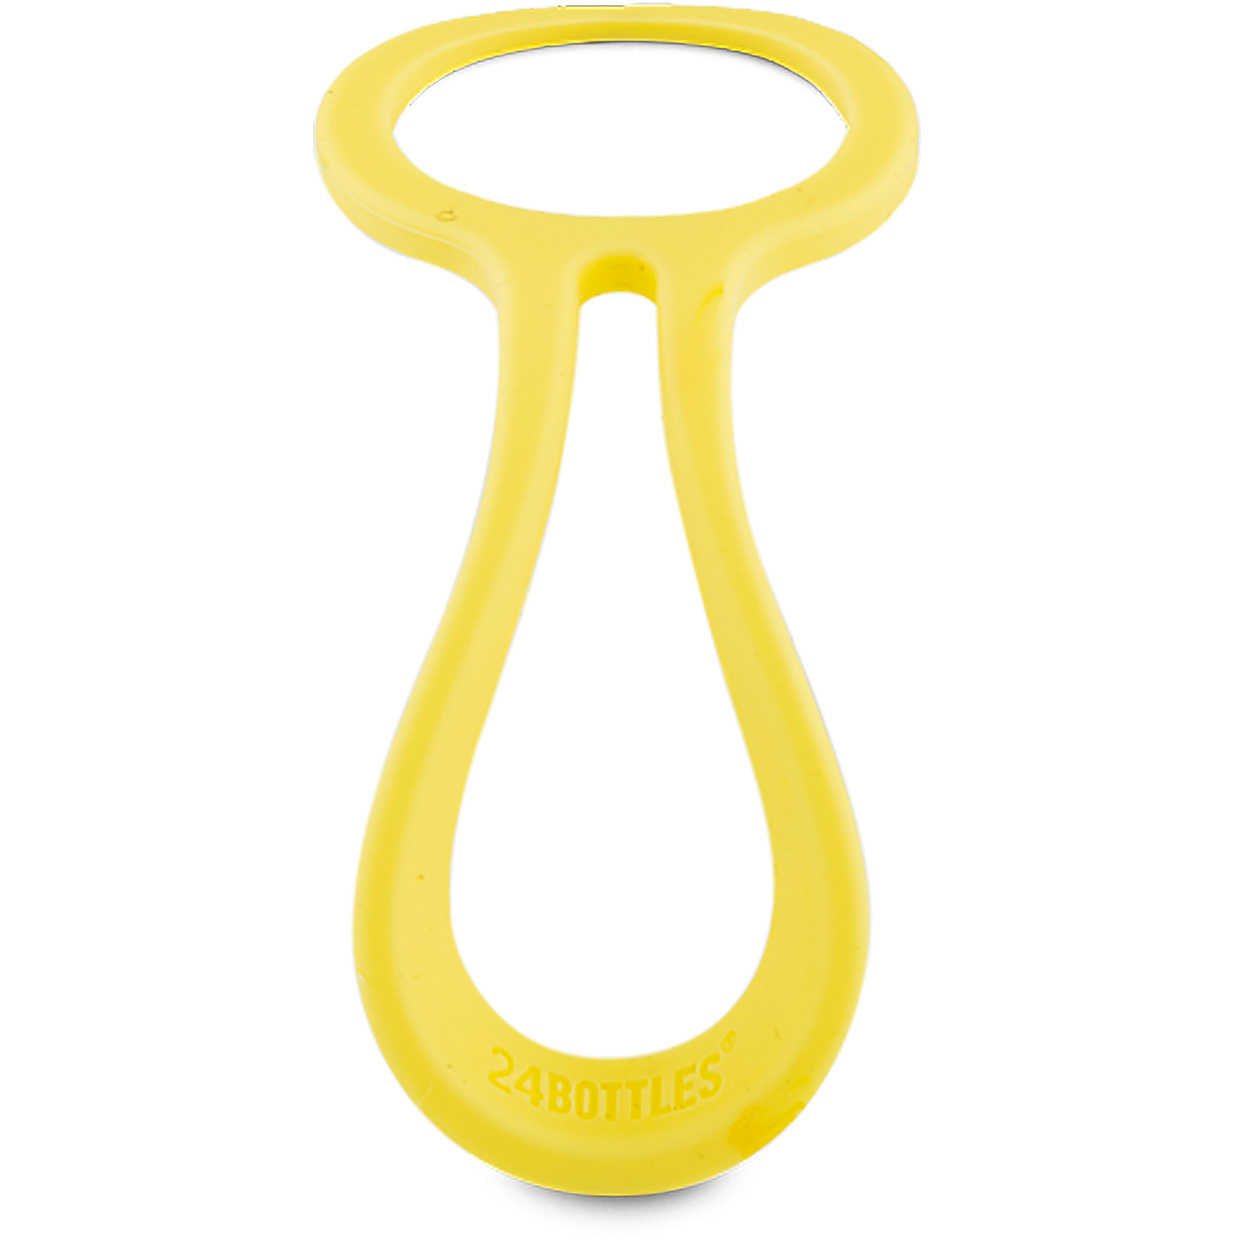 Accessorio per borraccia in silicone giallo Bottle tie